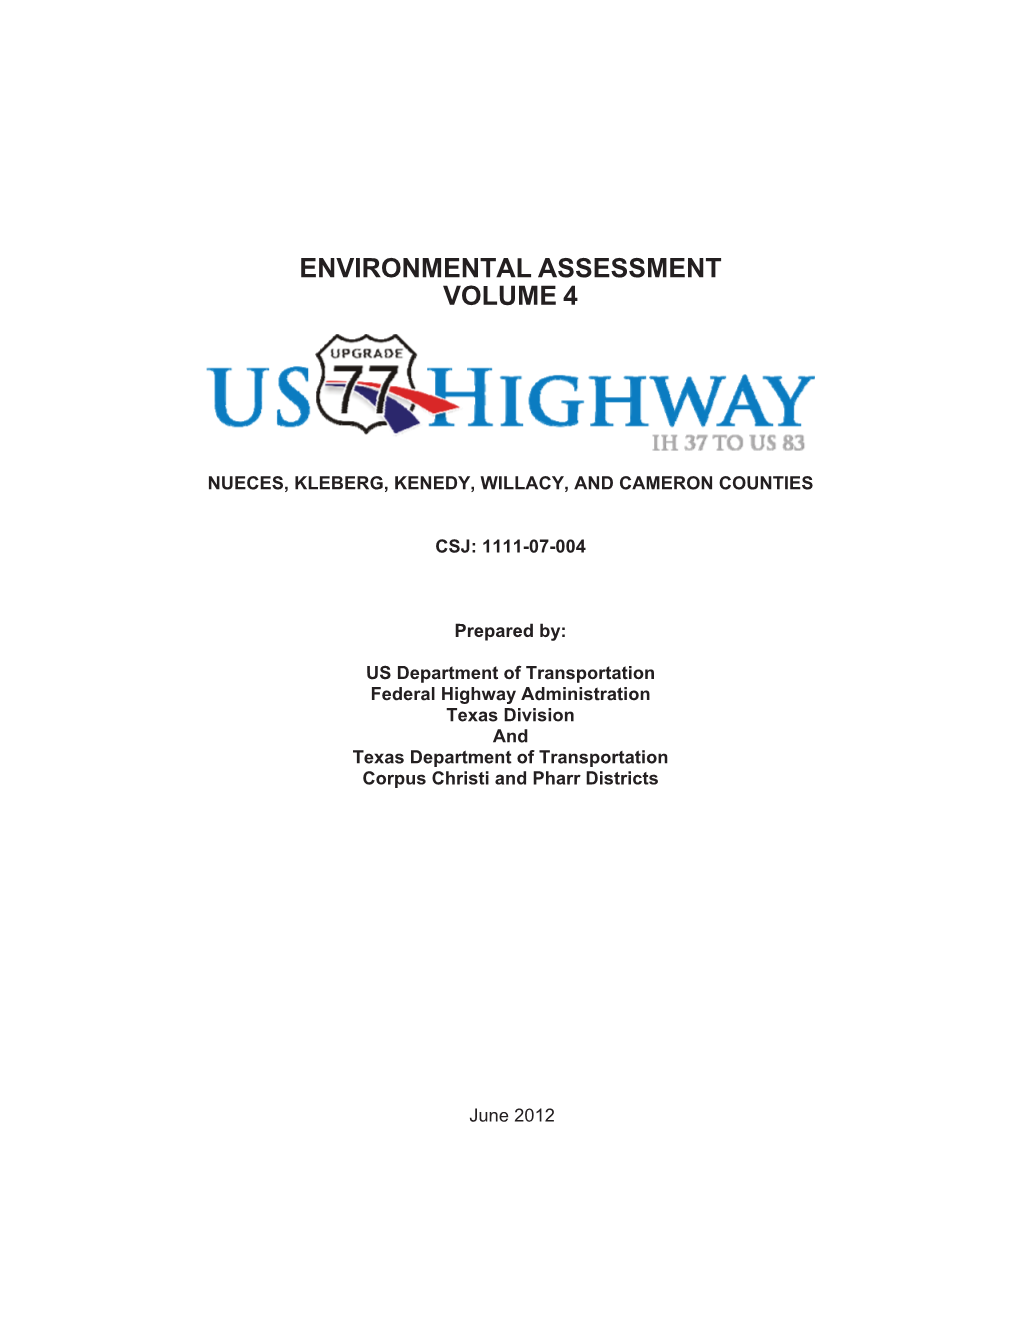 Environmental Assessment Volume 4